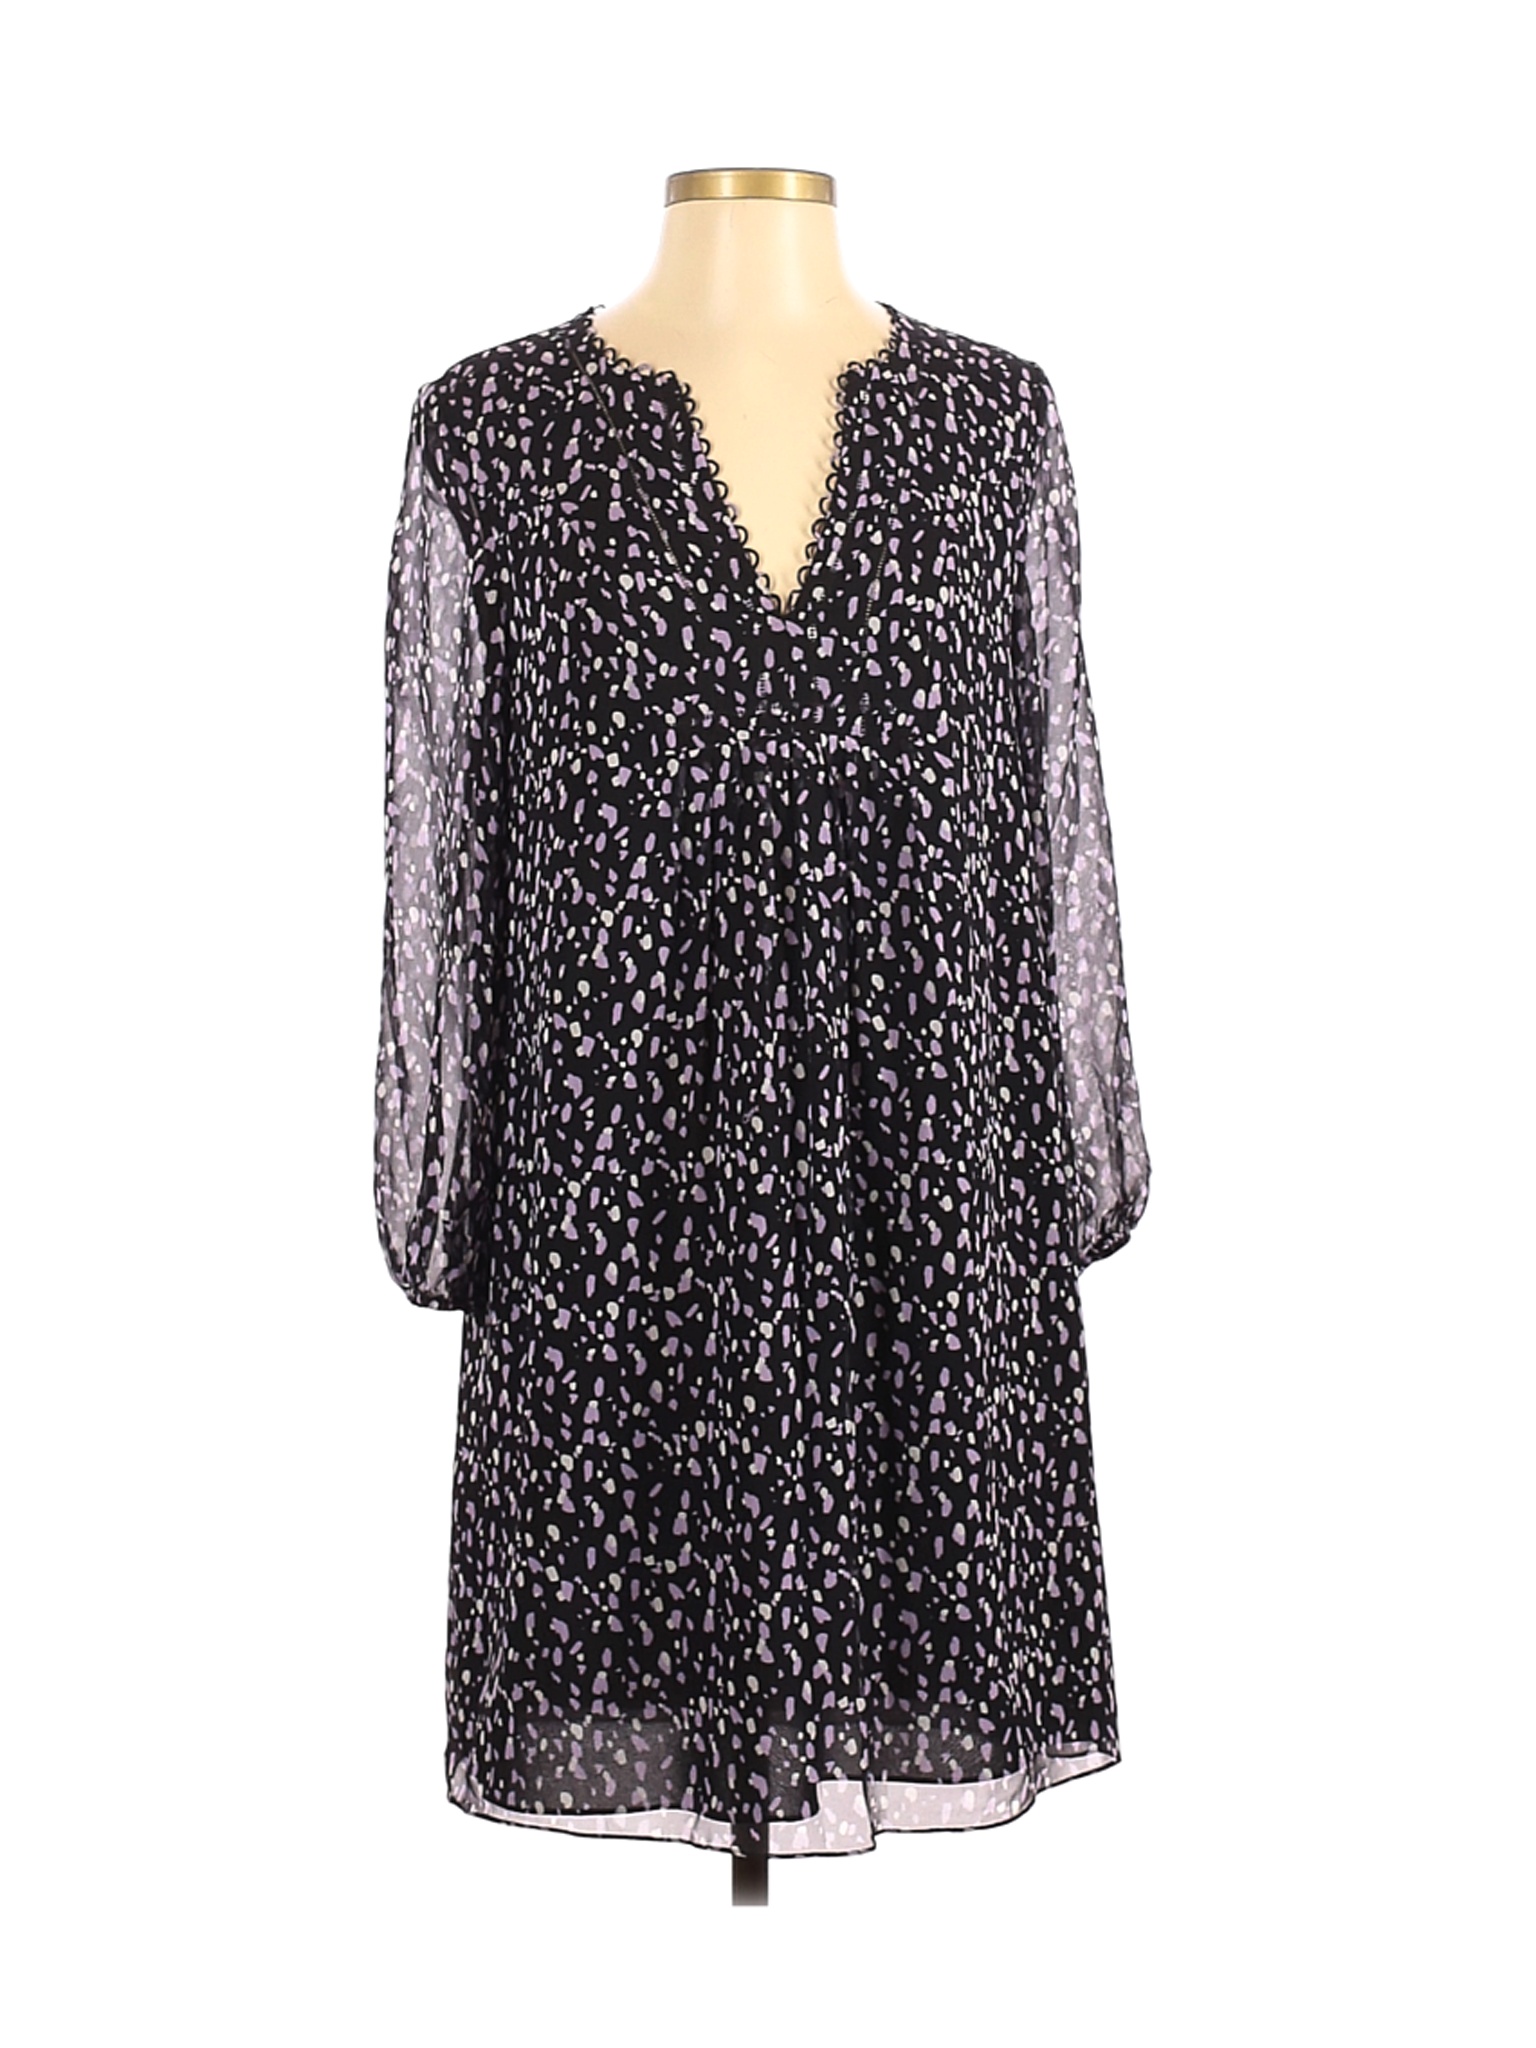 Diane von Furstenberg Women Purple Casual Dress 4 | eBay